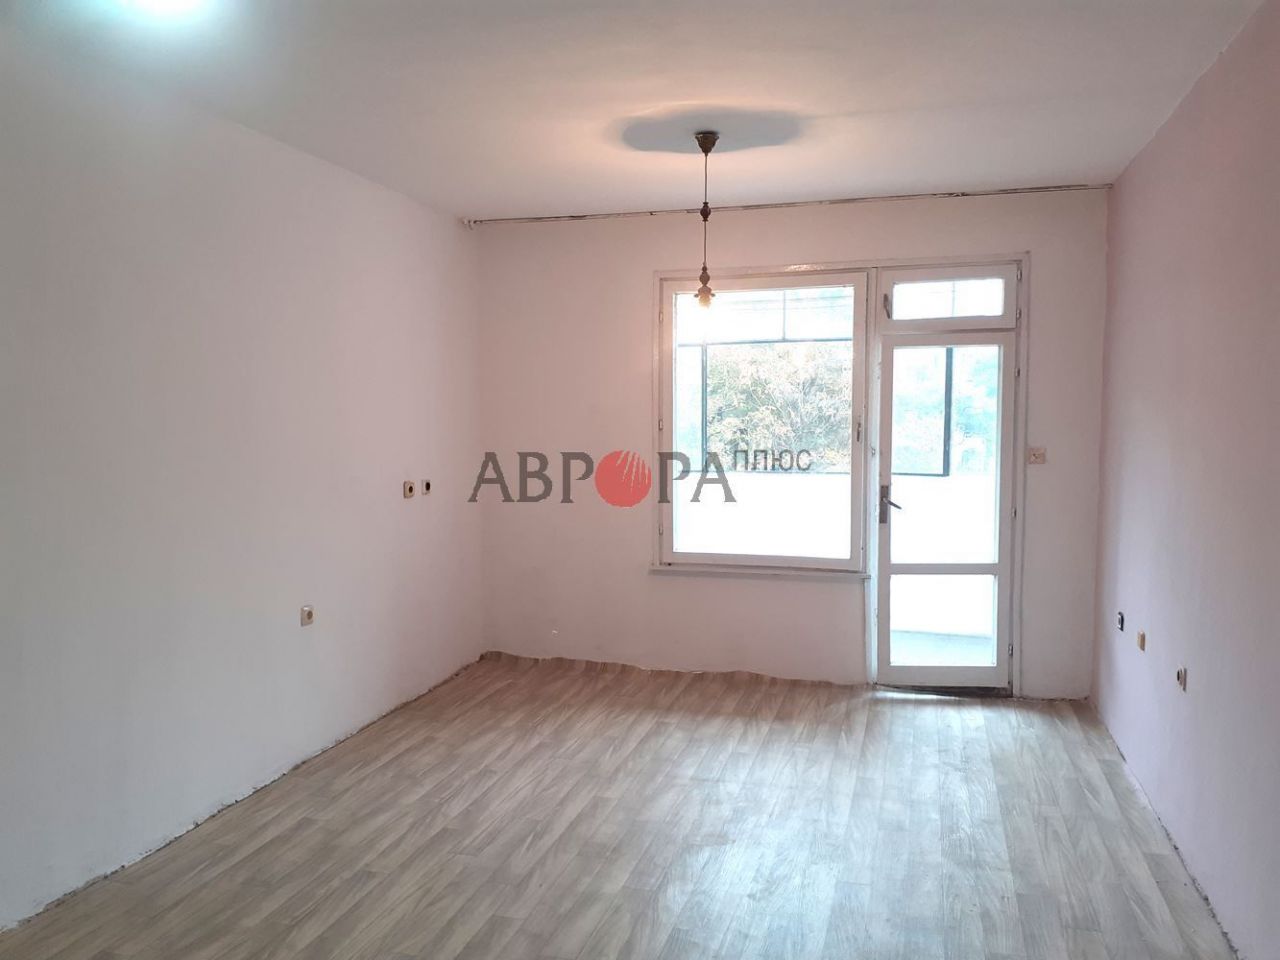 Apartment in Burgas, Bulgaria, 75 sq.m - picture 1